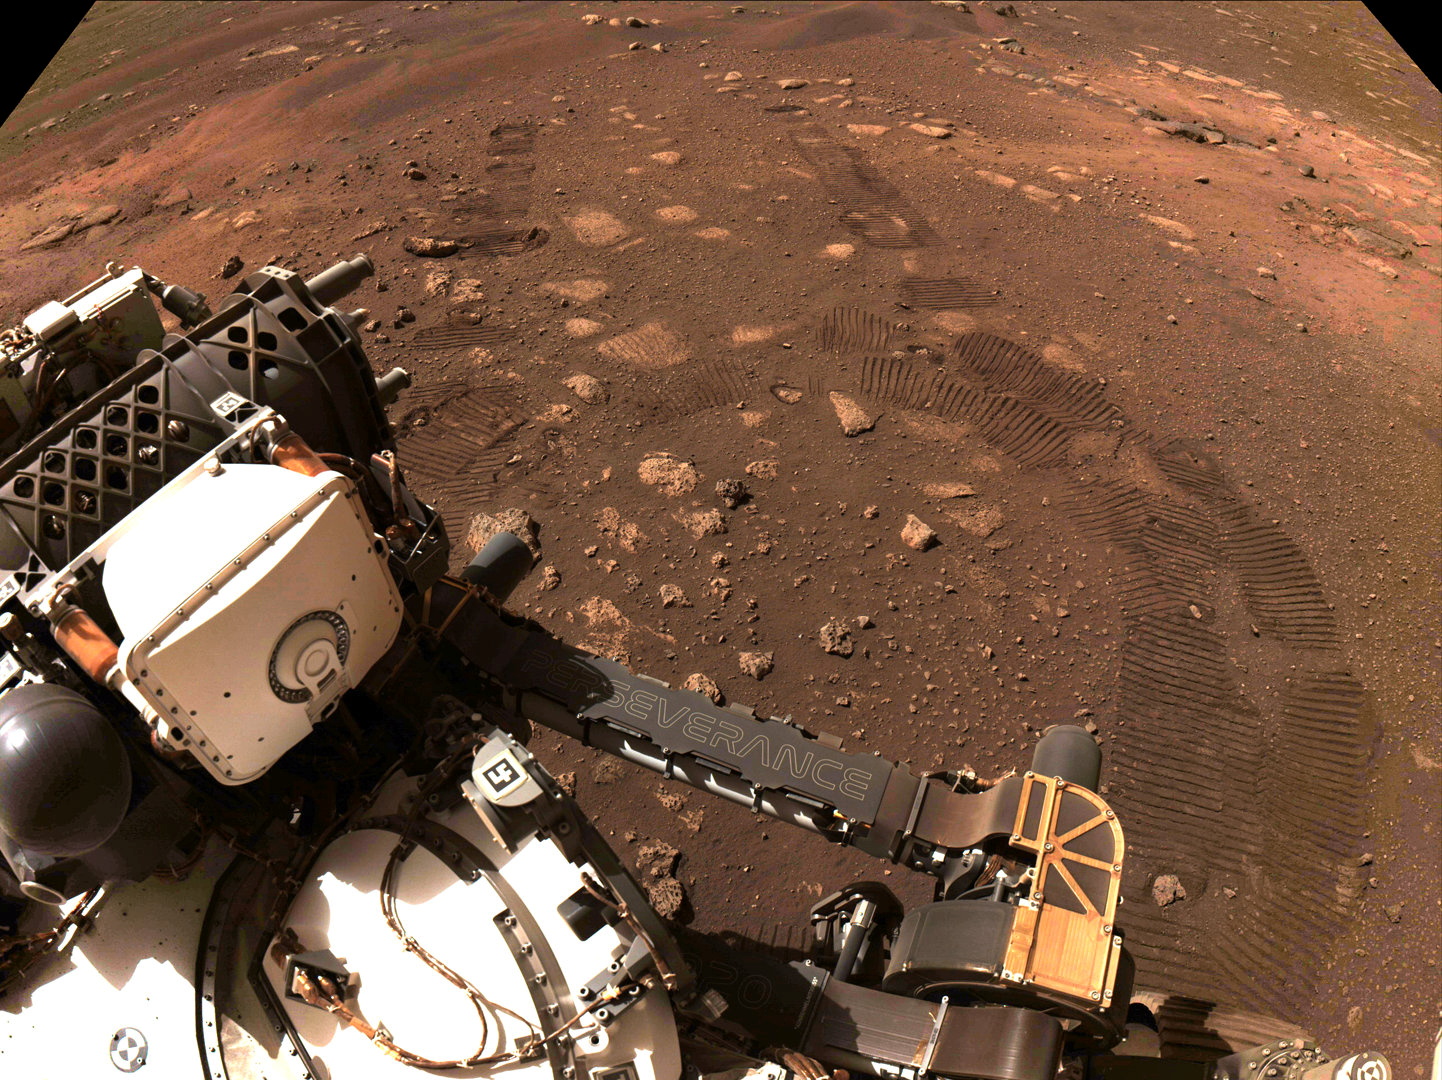 Prueba del rodamiento de Perseverance en Marte - NASA/JPL-Caltech/Handout via REUTERS 